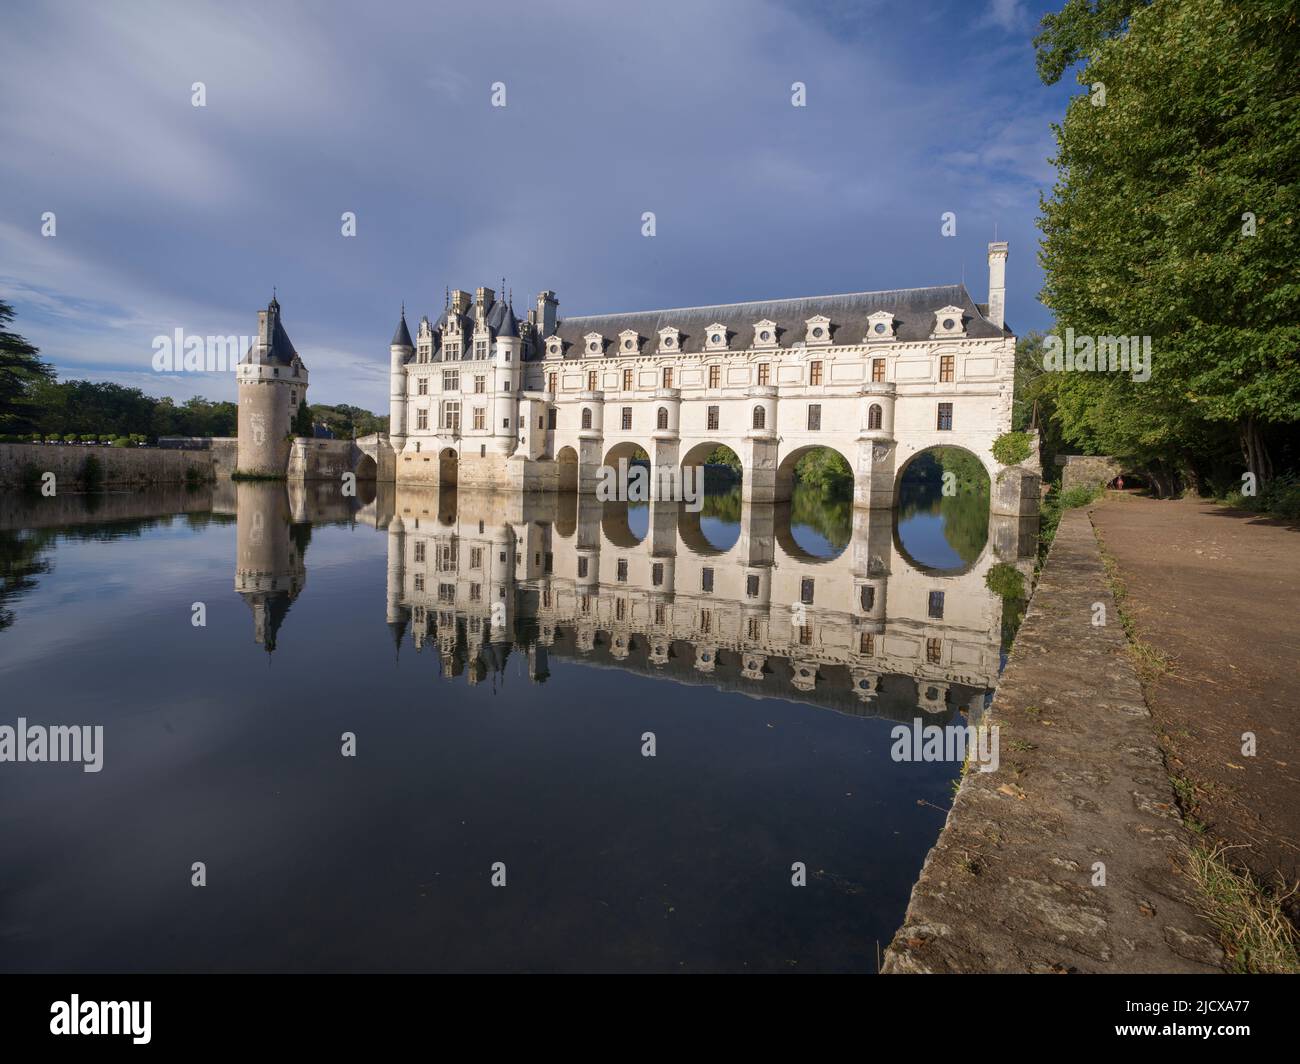 Chateau de Chenonceau castle reflected in the water, UNESCO World Heritage Site, Chenonceau, Indre-et-Loire, Centre-Val de Loire, France, Europe Stock Photo